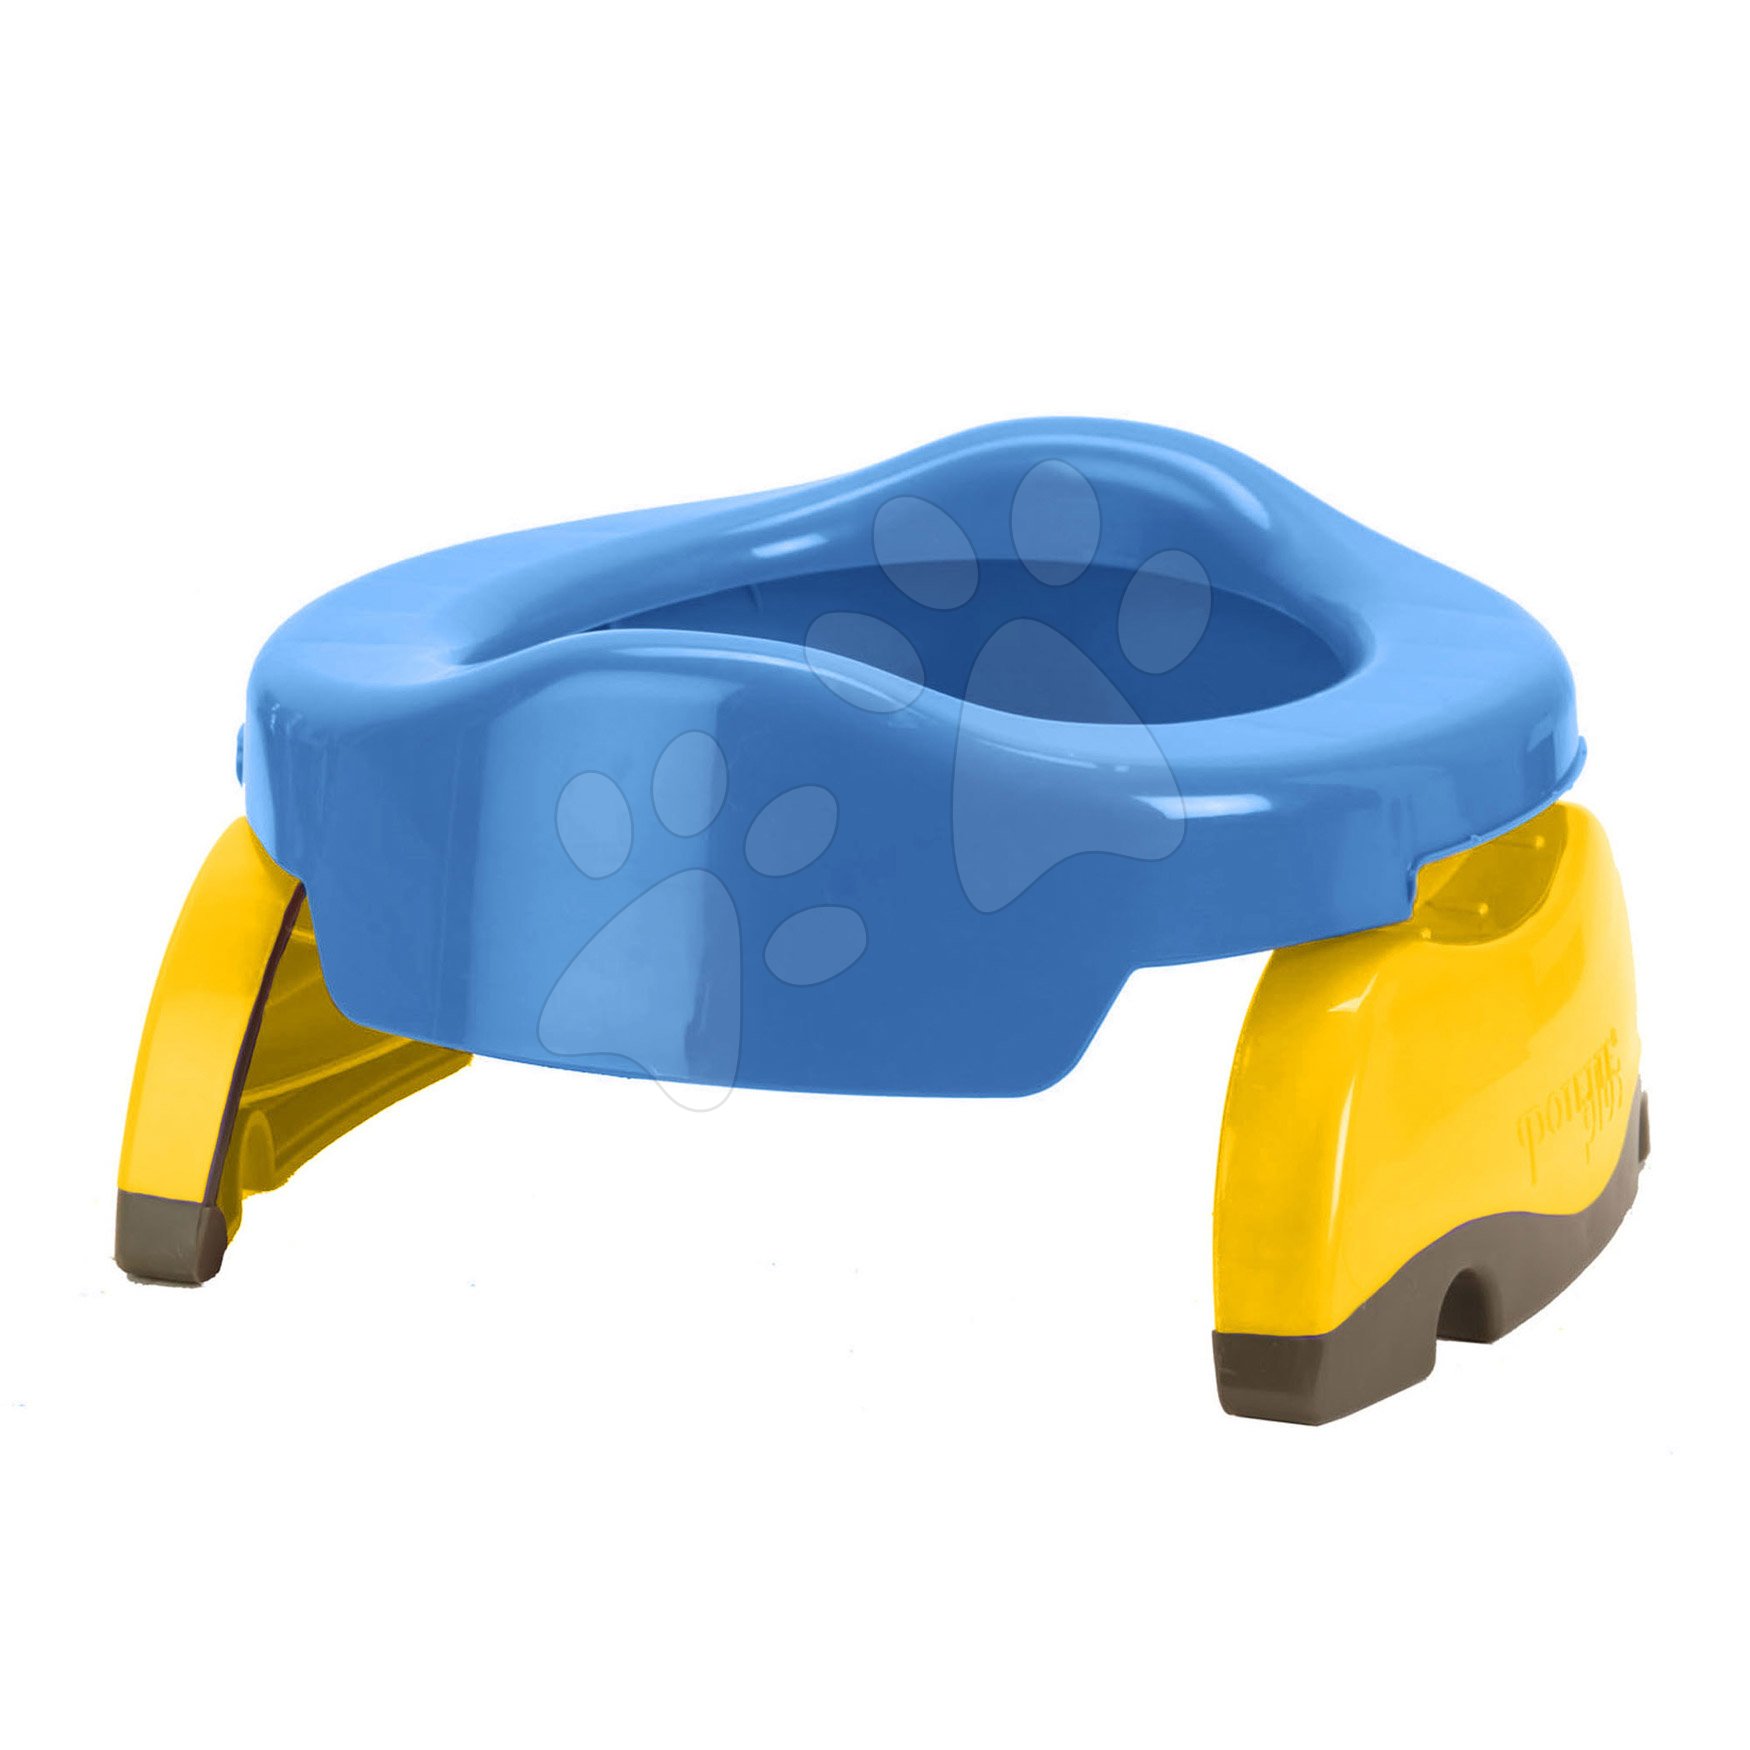 Potette Plus utazó bili és WC szűkítő 23009 kék-sárga Baba játék webáruház - játék rendelés online